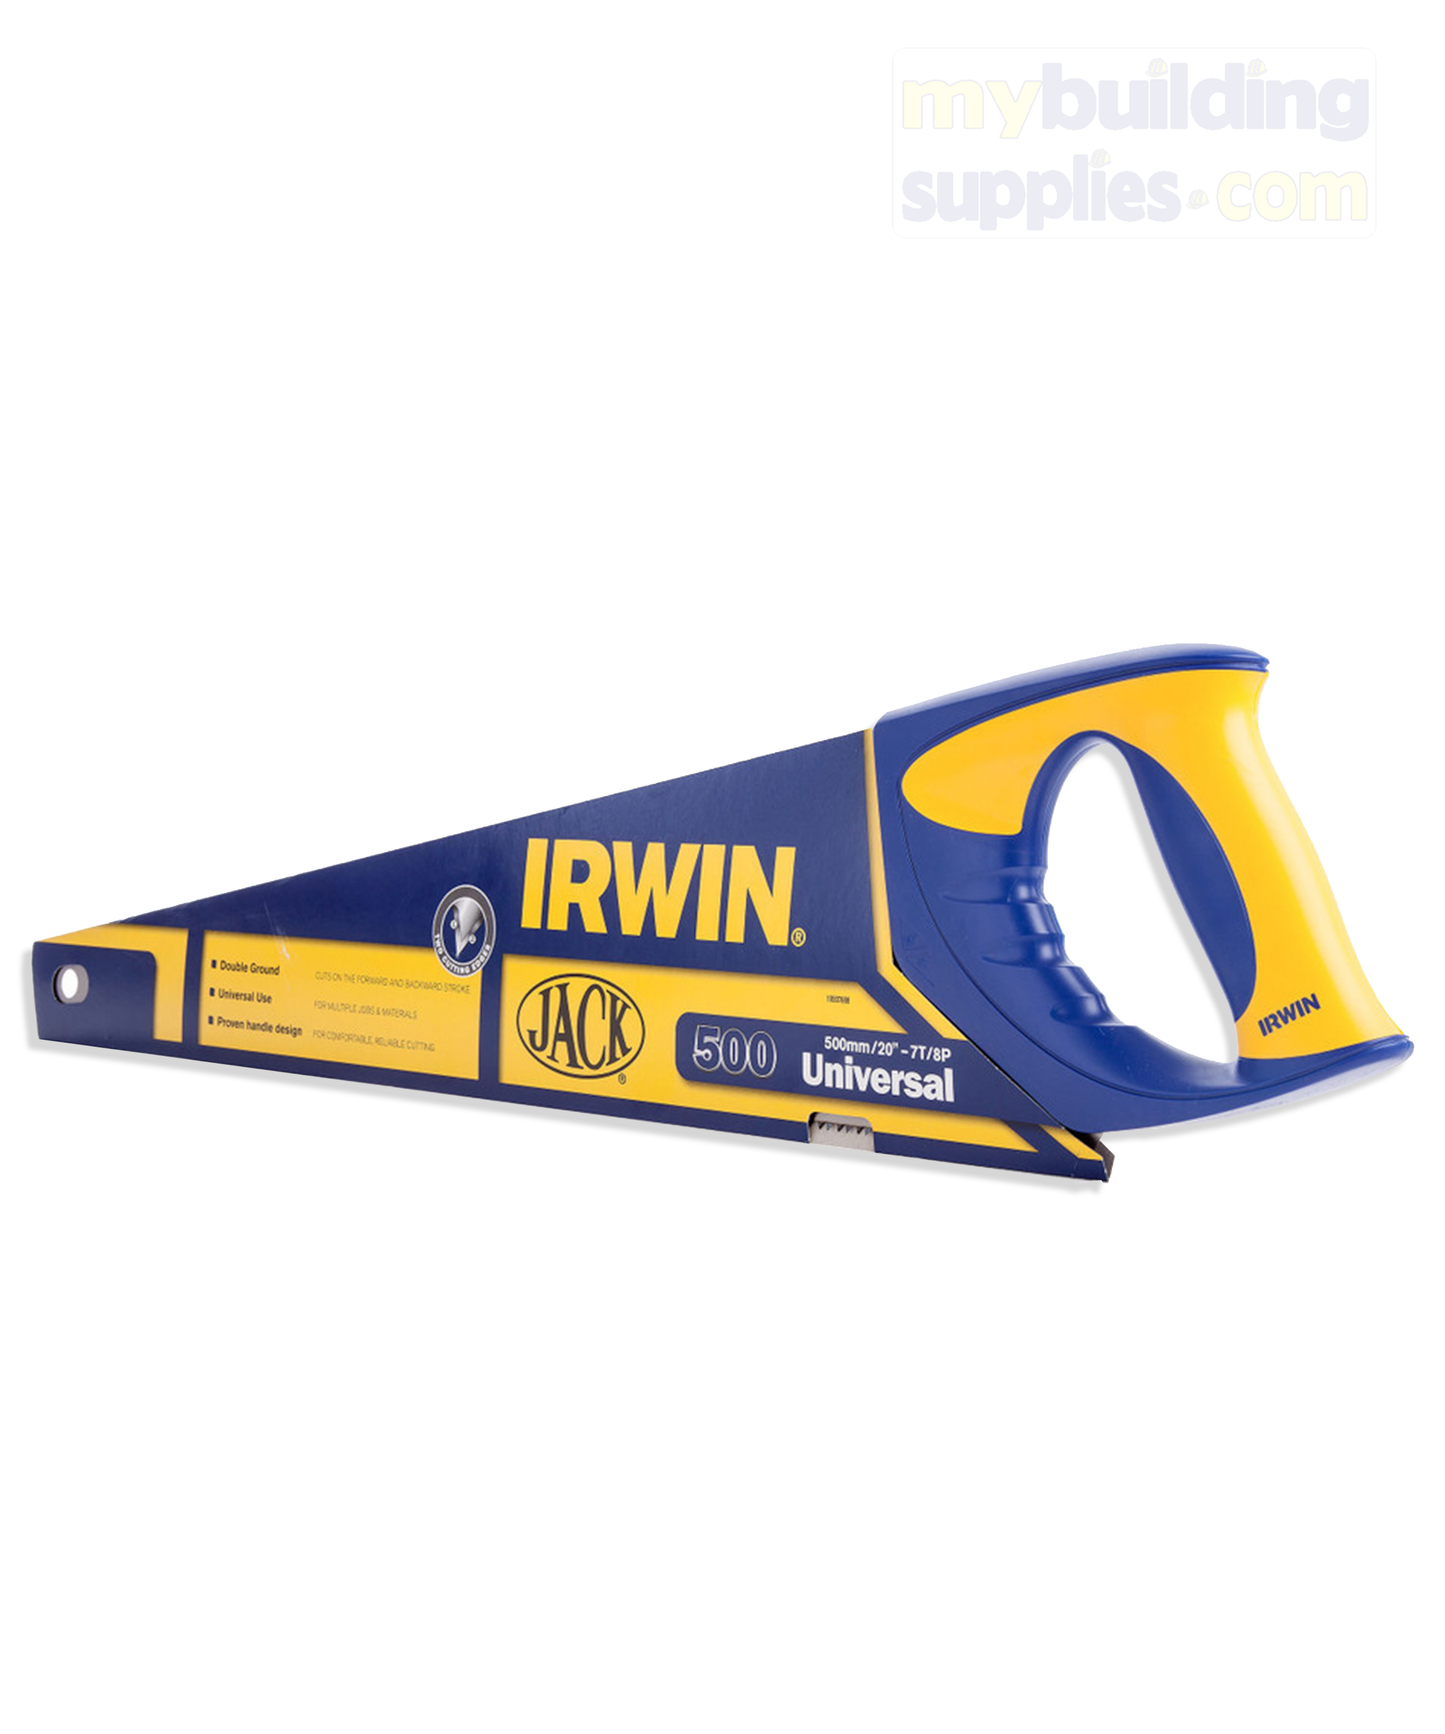 Irwin Saw